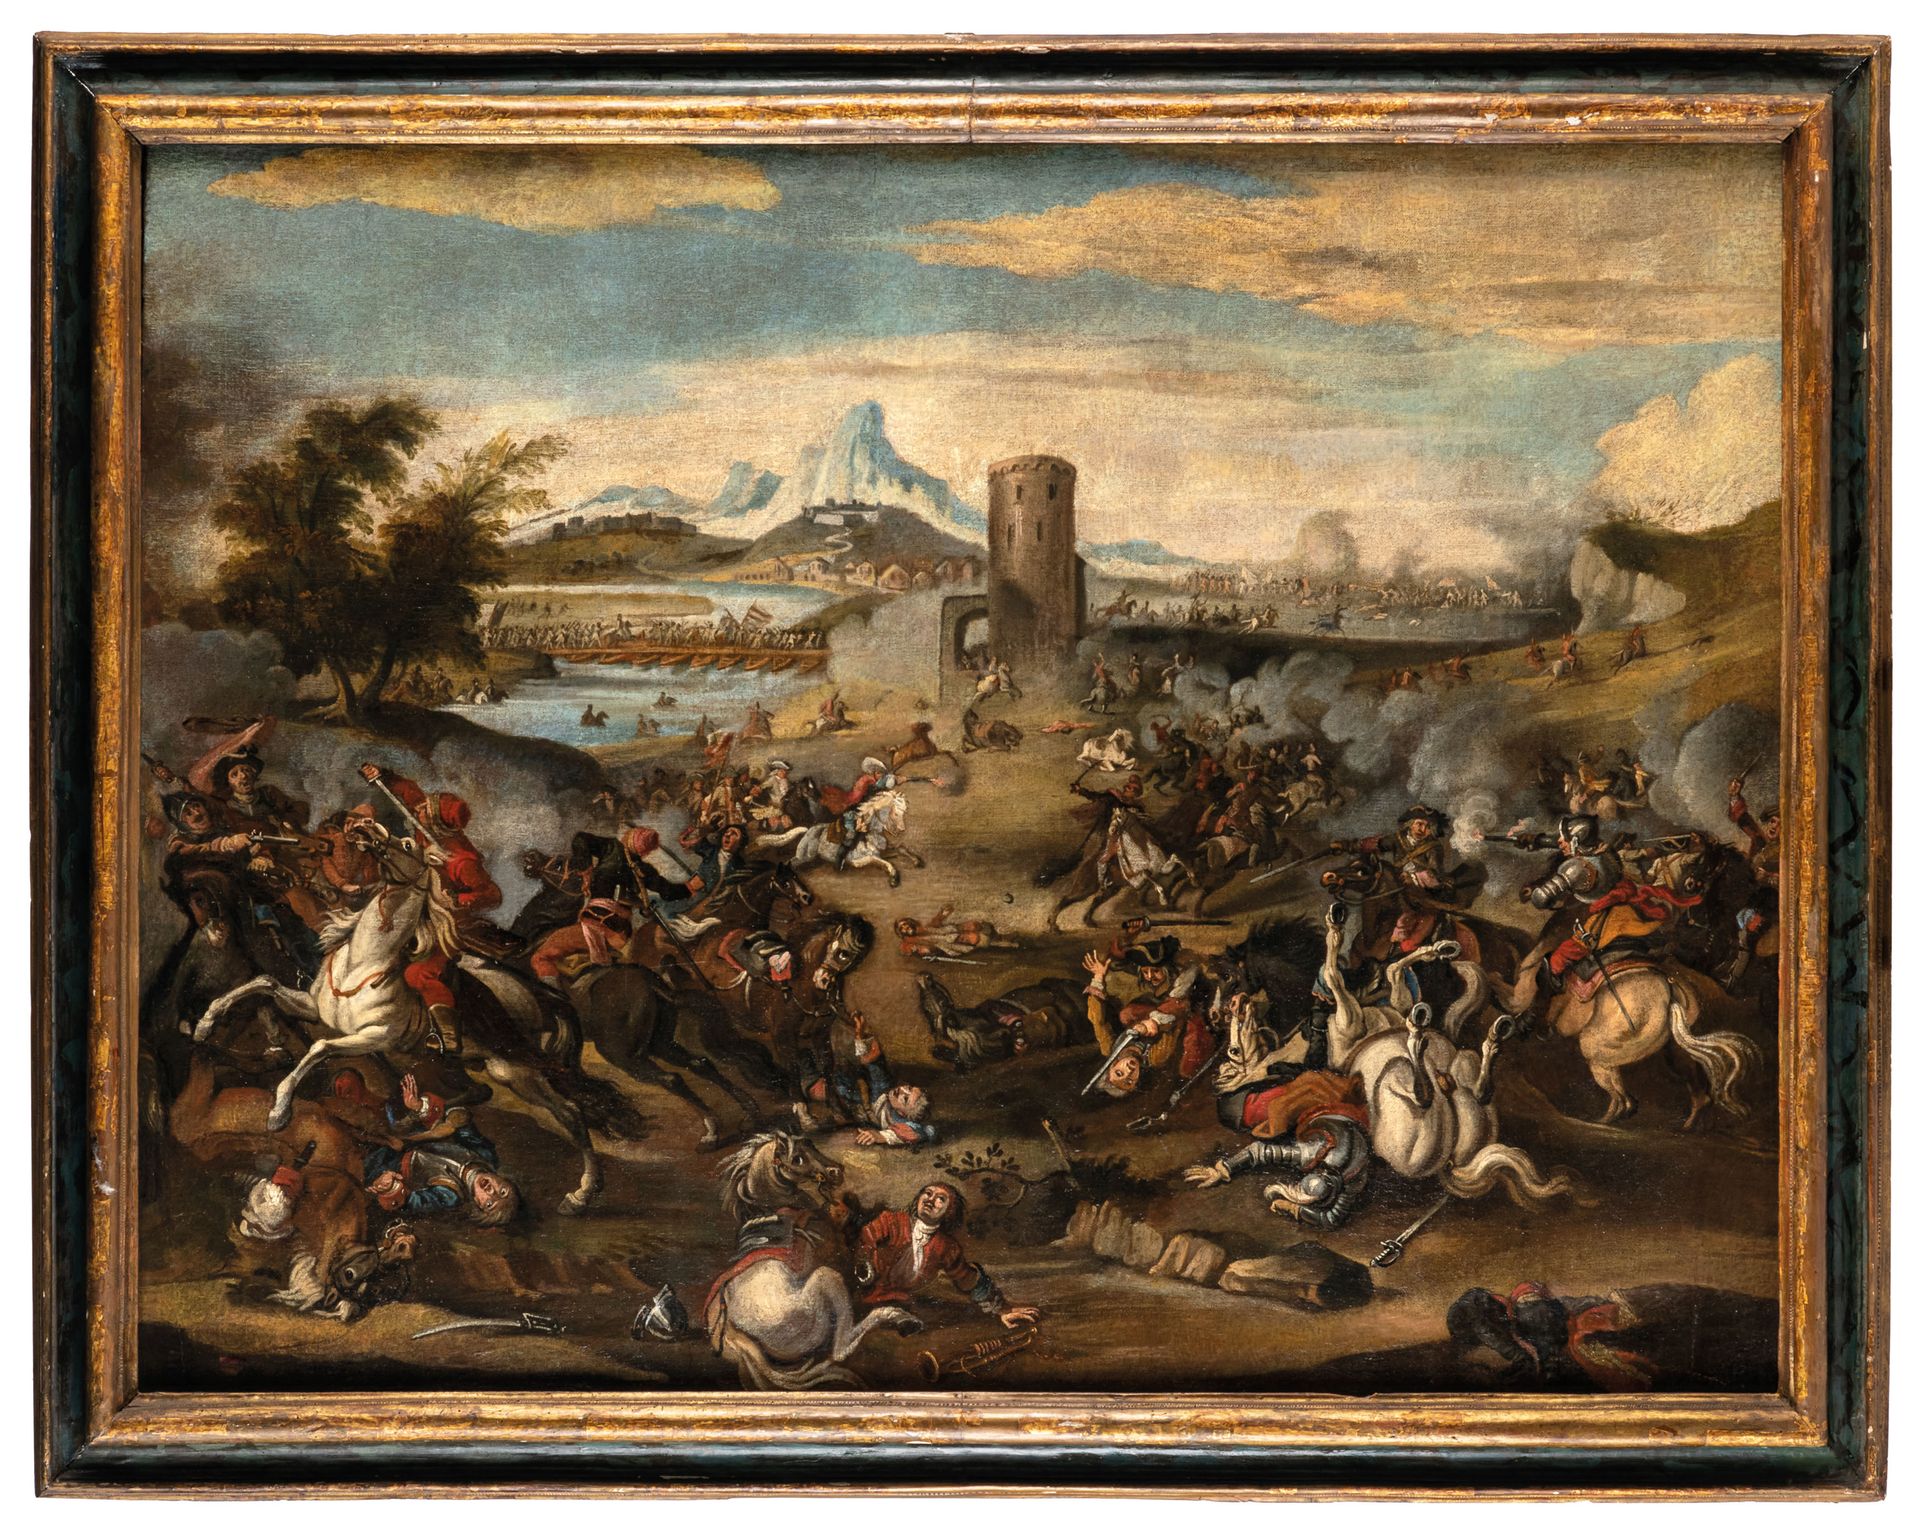 PITTORE DEL XVIII SECOLO Batalla
Óleo sobre lienzo, 103X135 cm